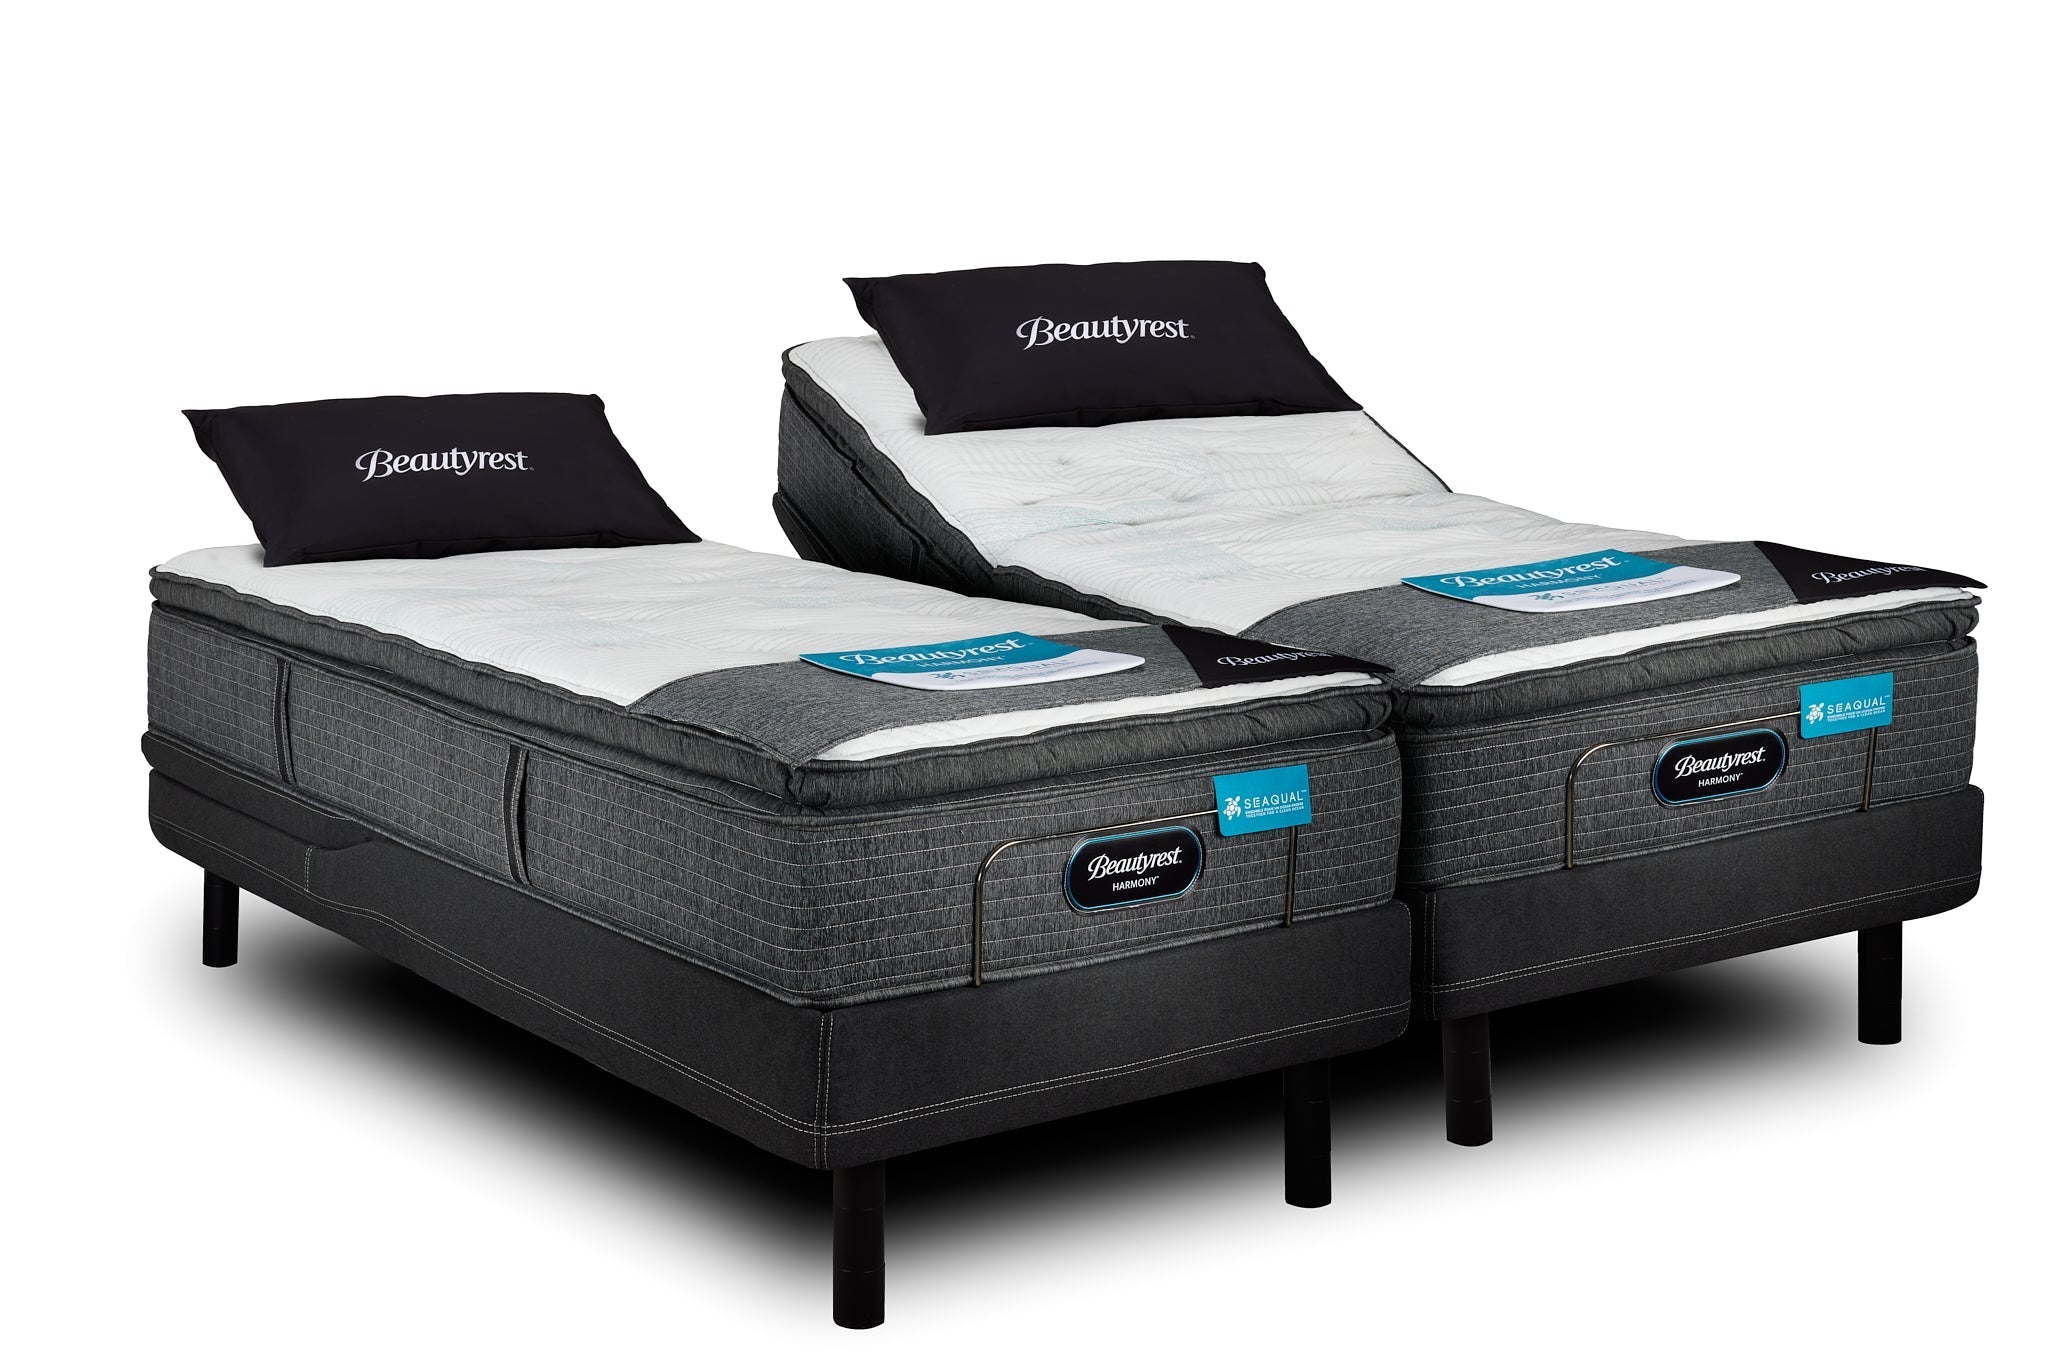 Ultimate Beautyrest Split King Adjustable Bed